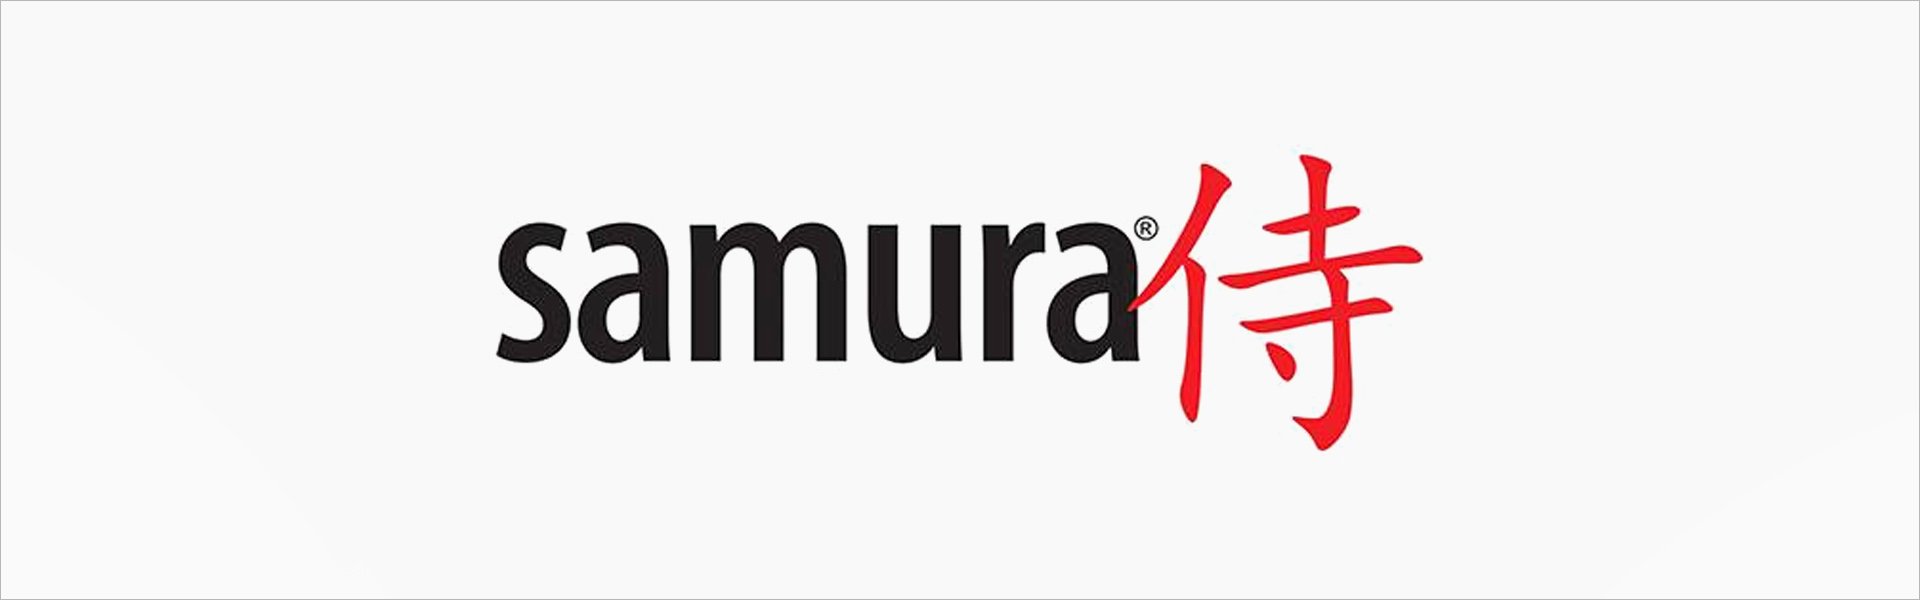 Samura DAMASCUS Комплект кухонных ножей 3 шт. Paring / Utility / Chef's из AUS 10 Дамасской стали 61 HRC (67-слойный) Samura